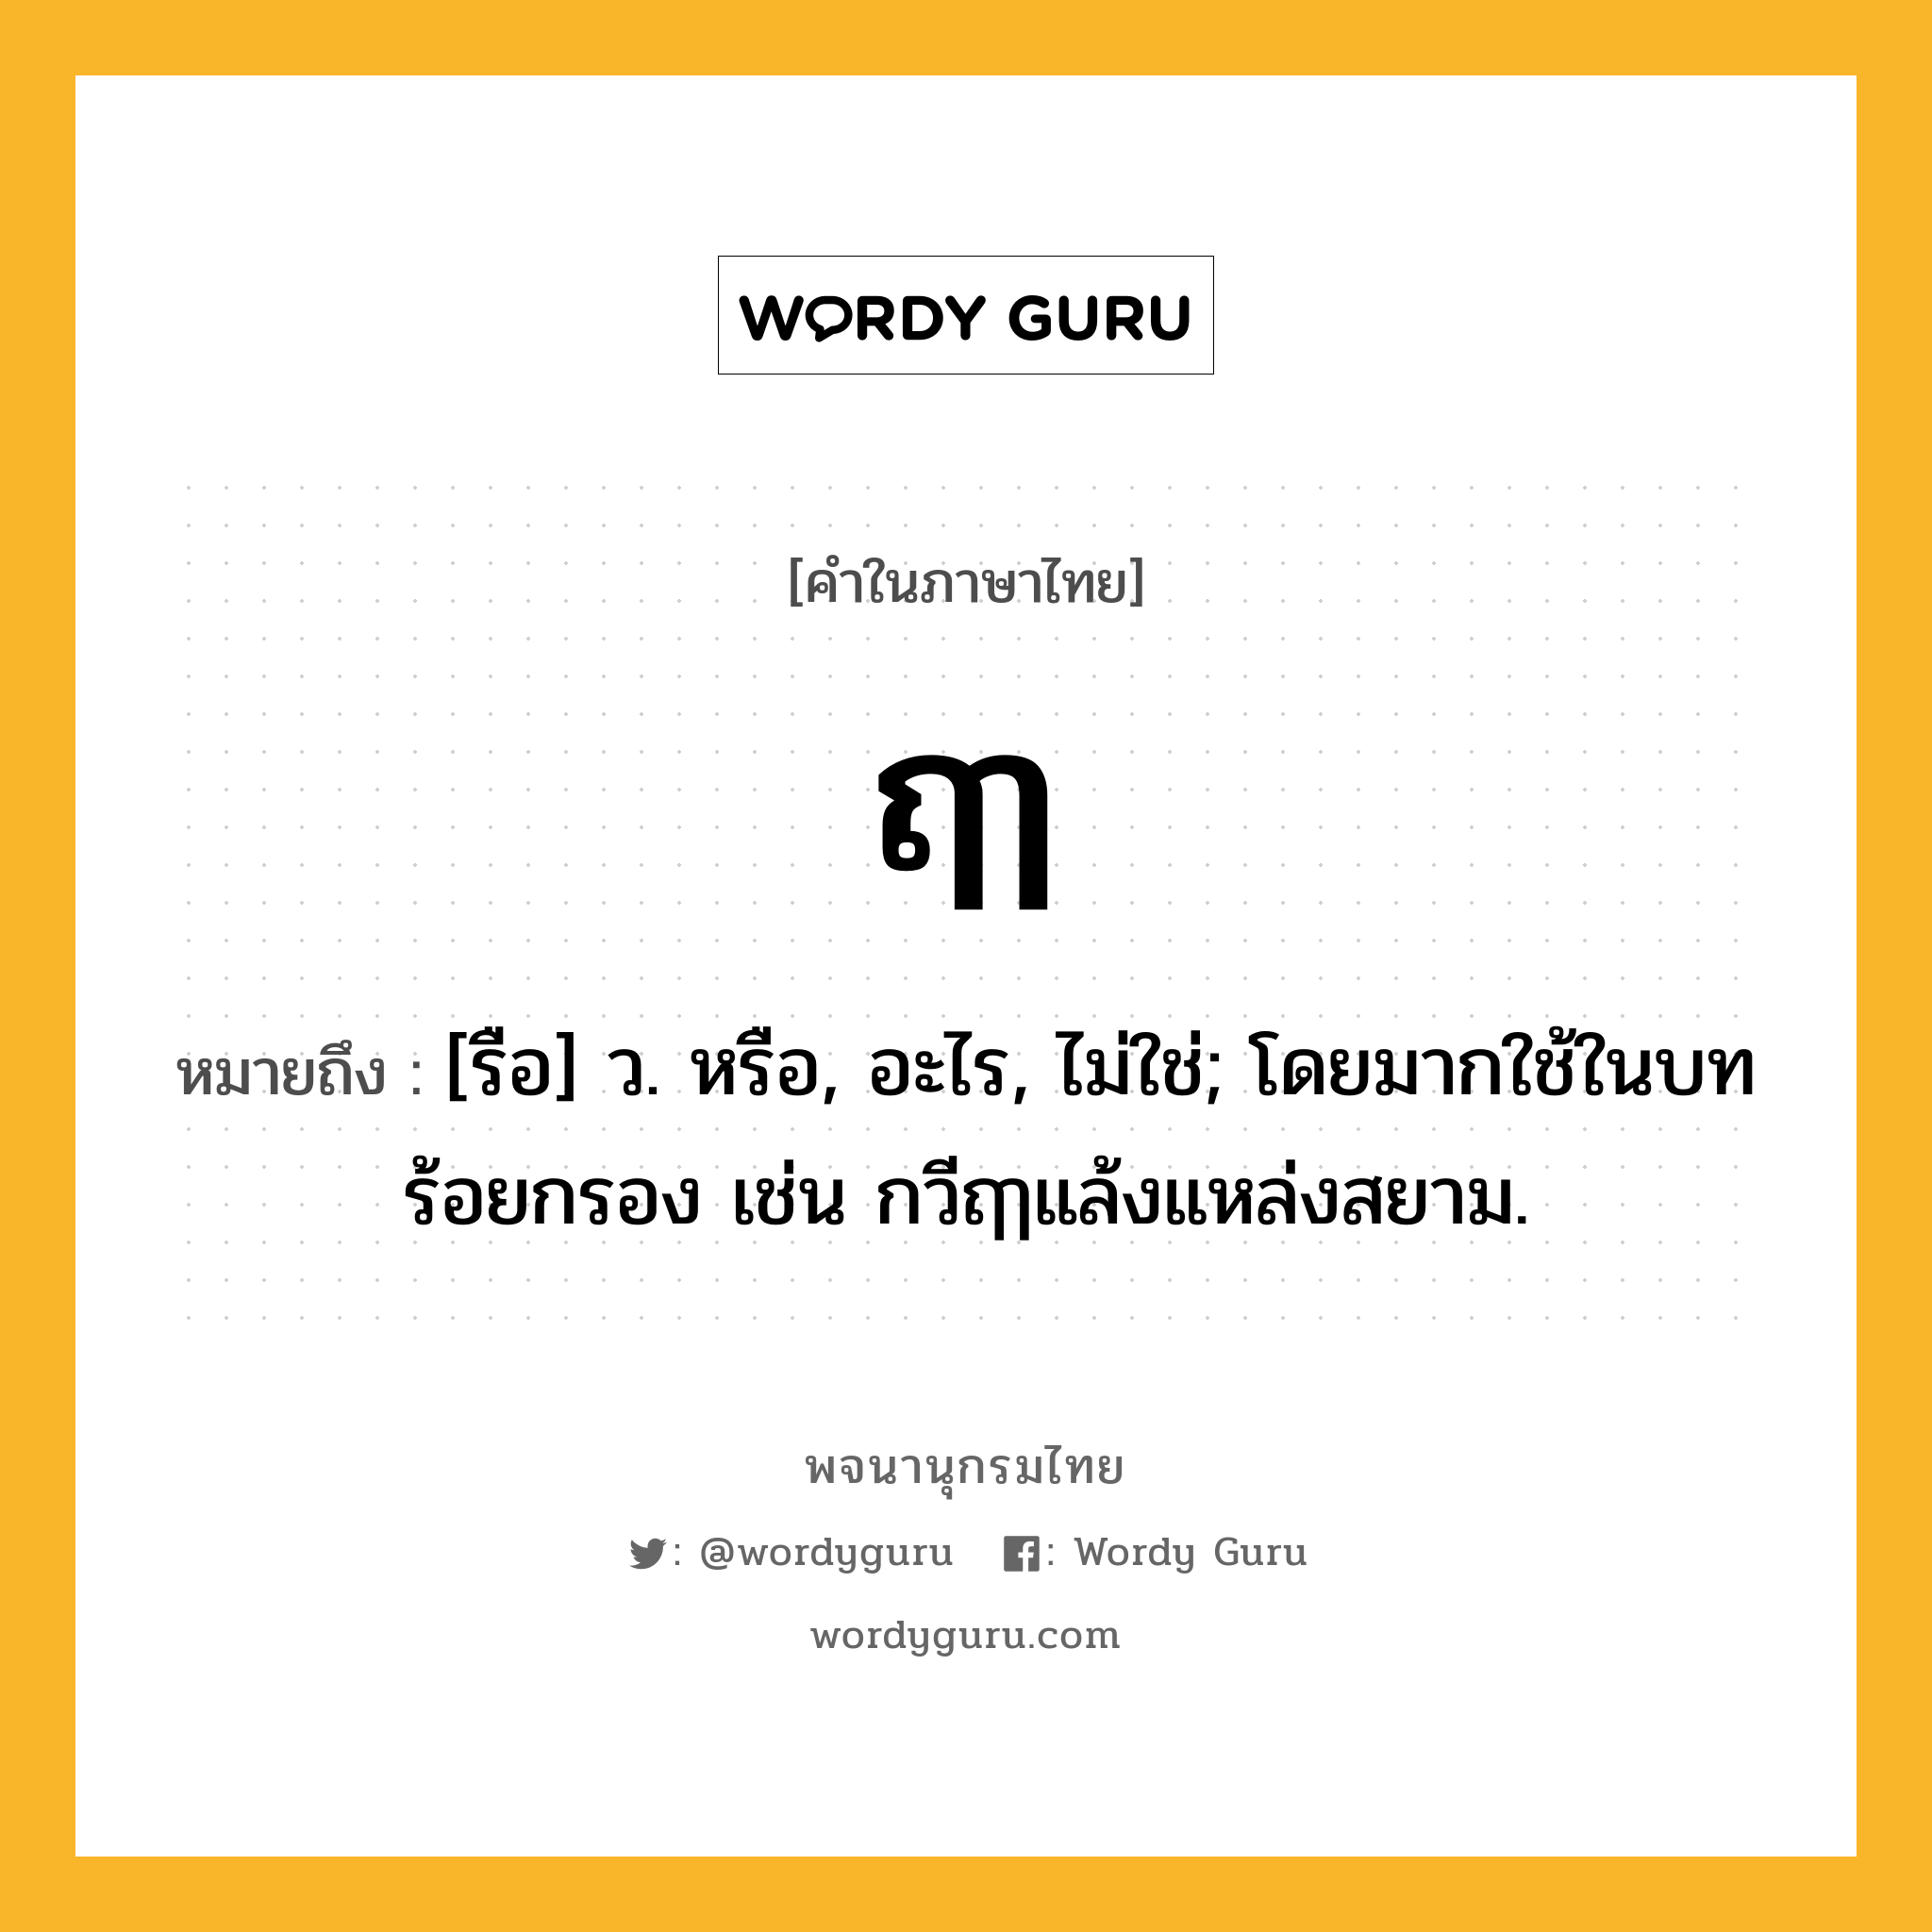 ฤๅ ความหมาย หมายถึงอะไร?, คำในภาษาไทย ฤๅ หมายถึง [รือ] ว. หรือ, อะไร, ไม่ใช่; โดยมากใช้ในบทร้อยกรอง เช่น กวีฤๅแล้งแหล่งสยาม.